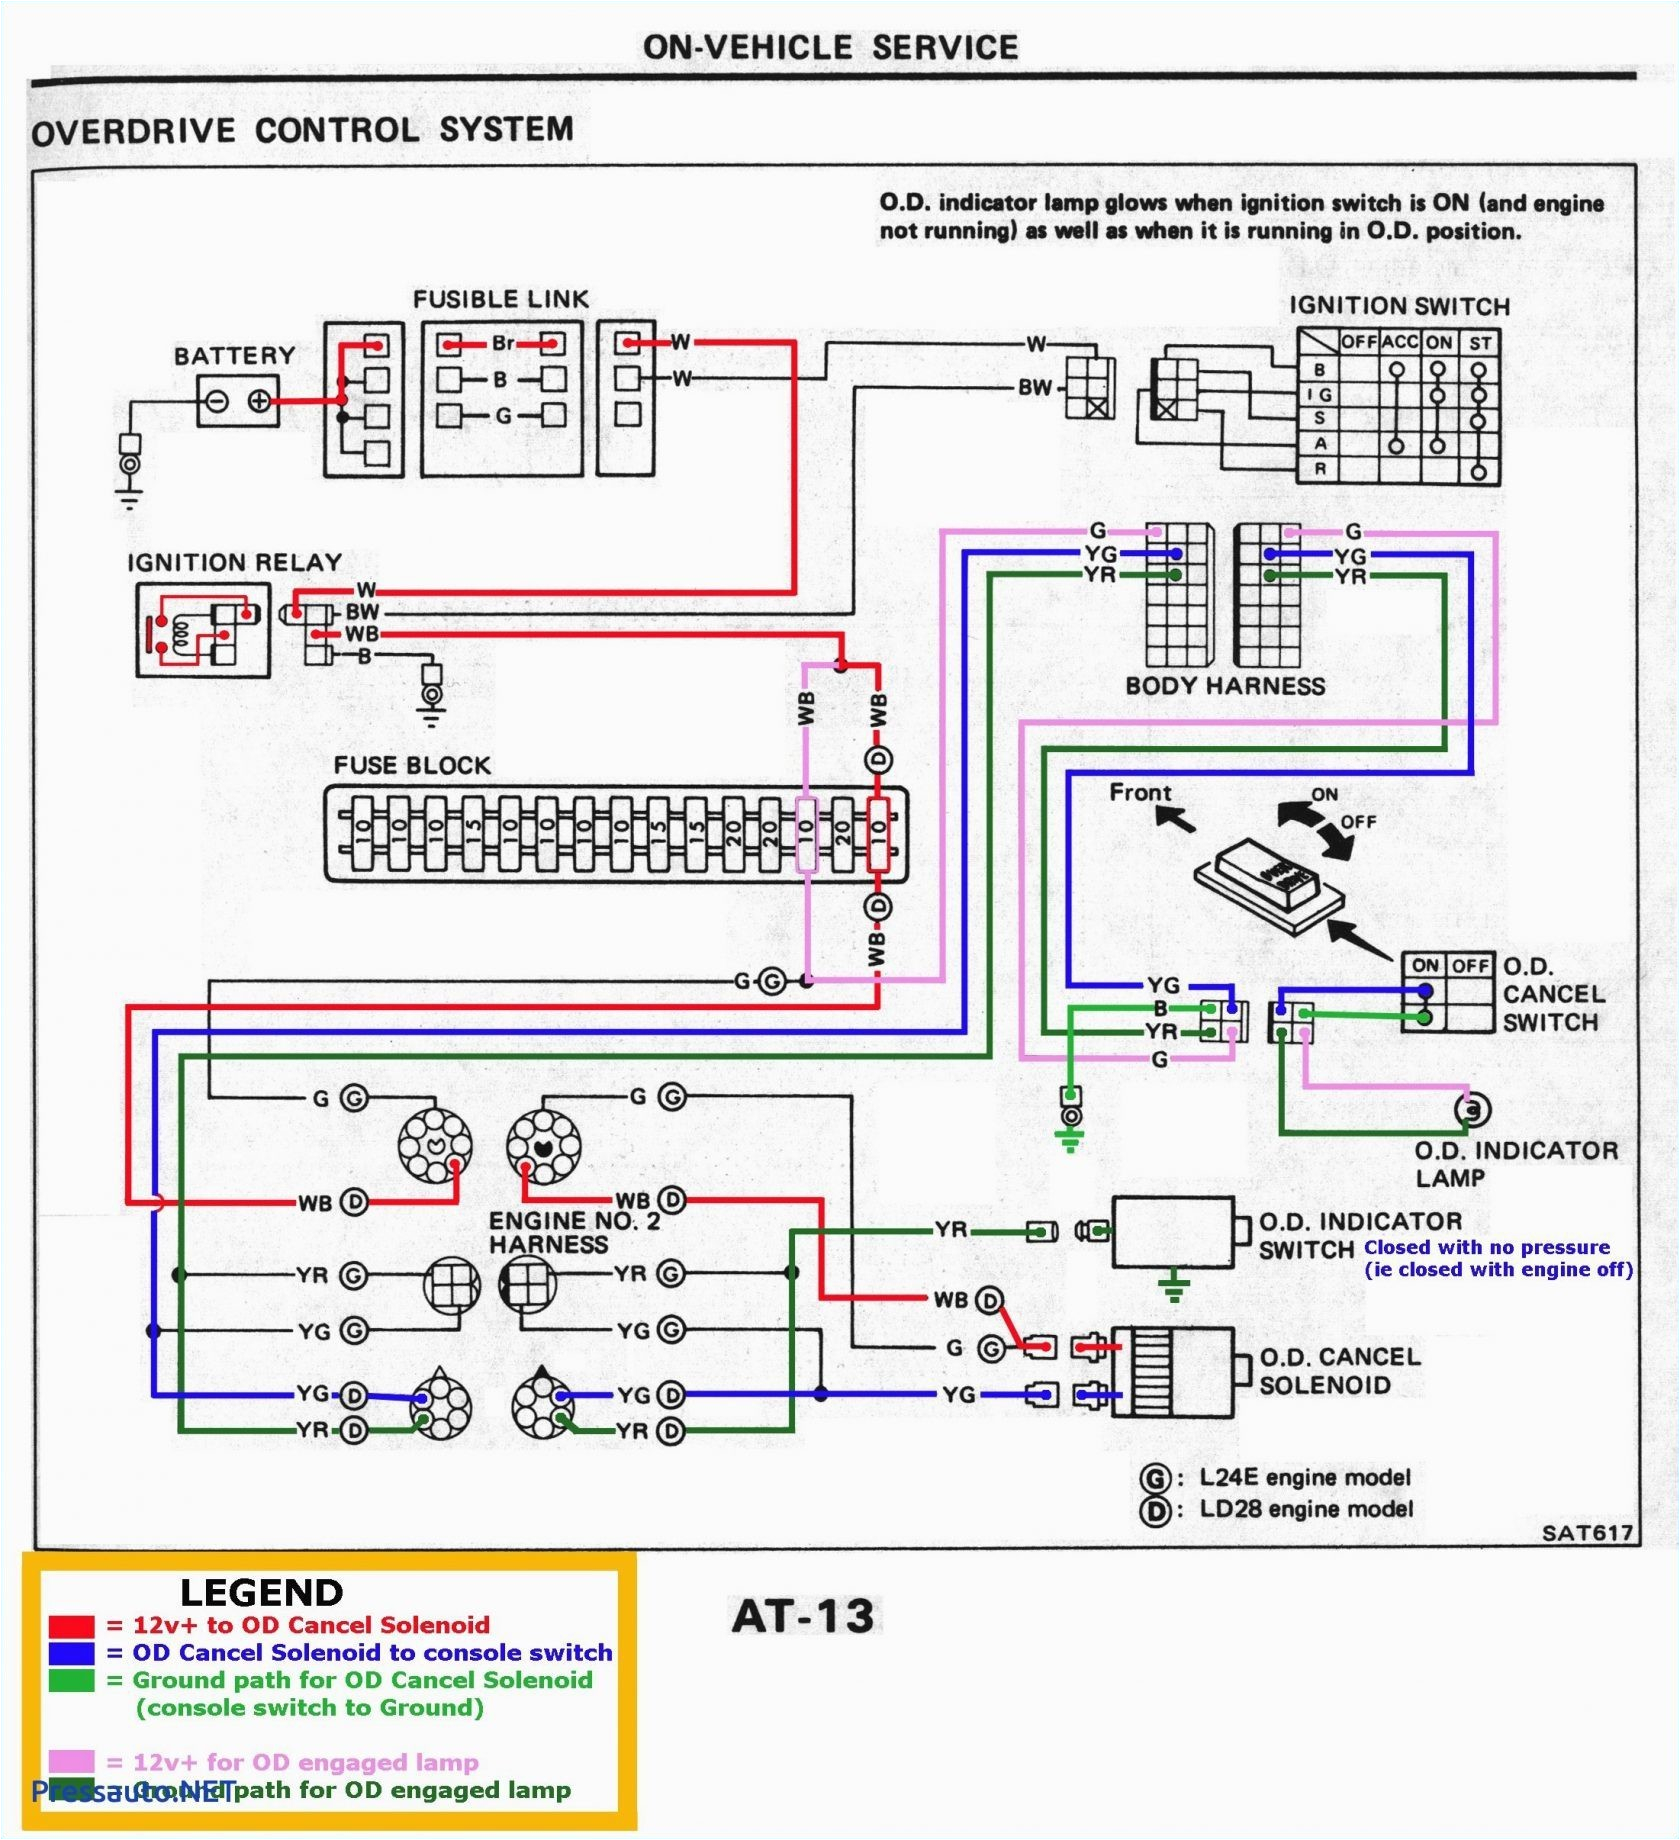 lance wiring harness blog wiring diagram lance c er wiring harness diagram